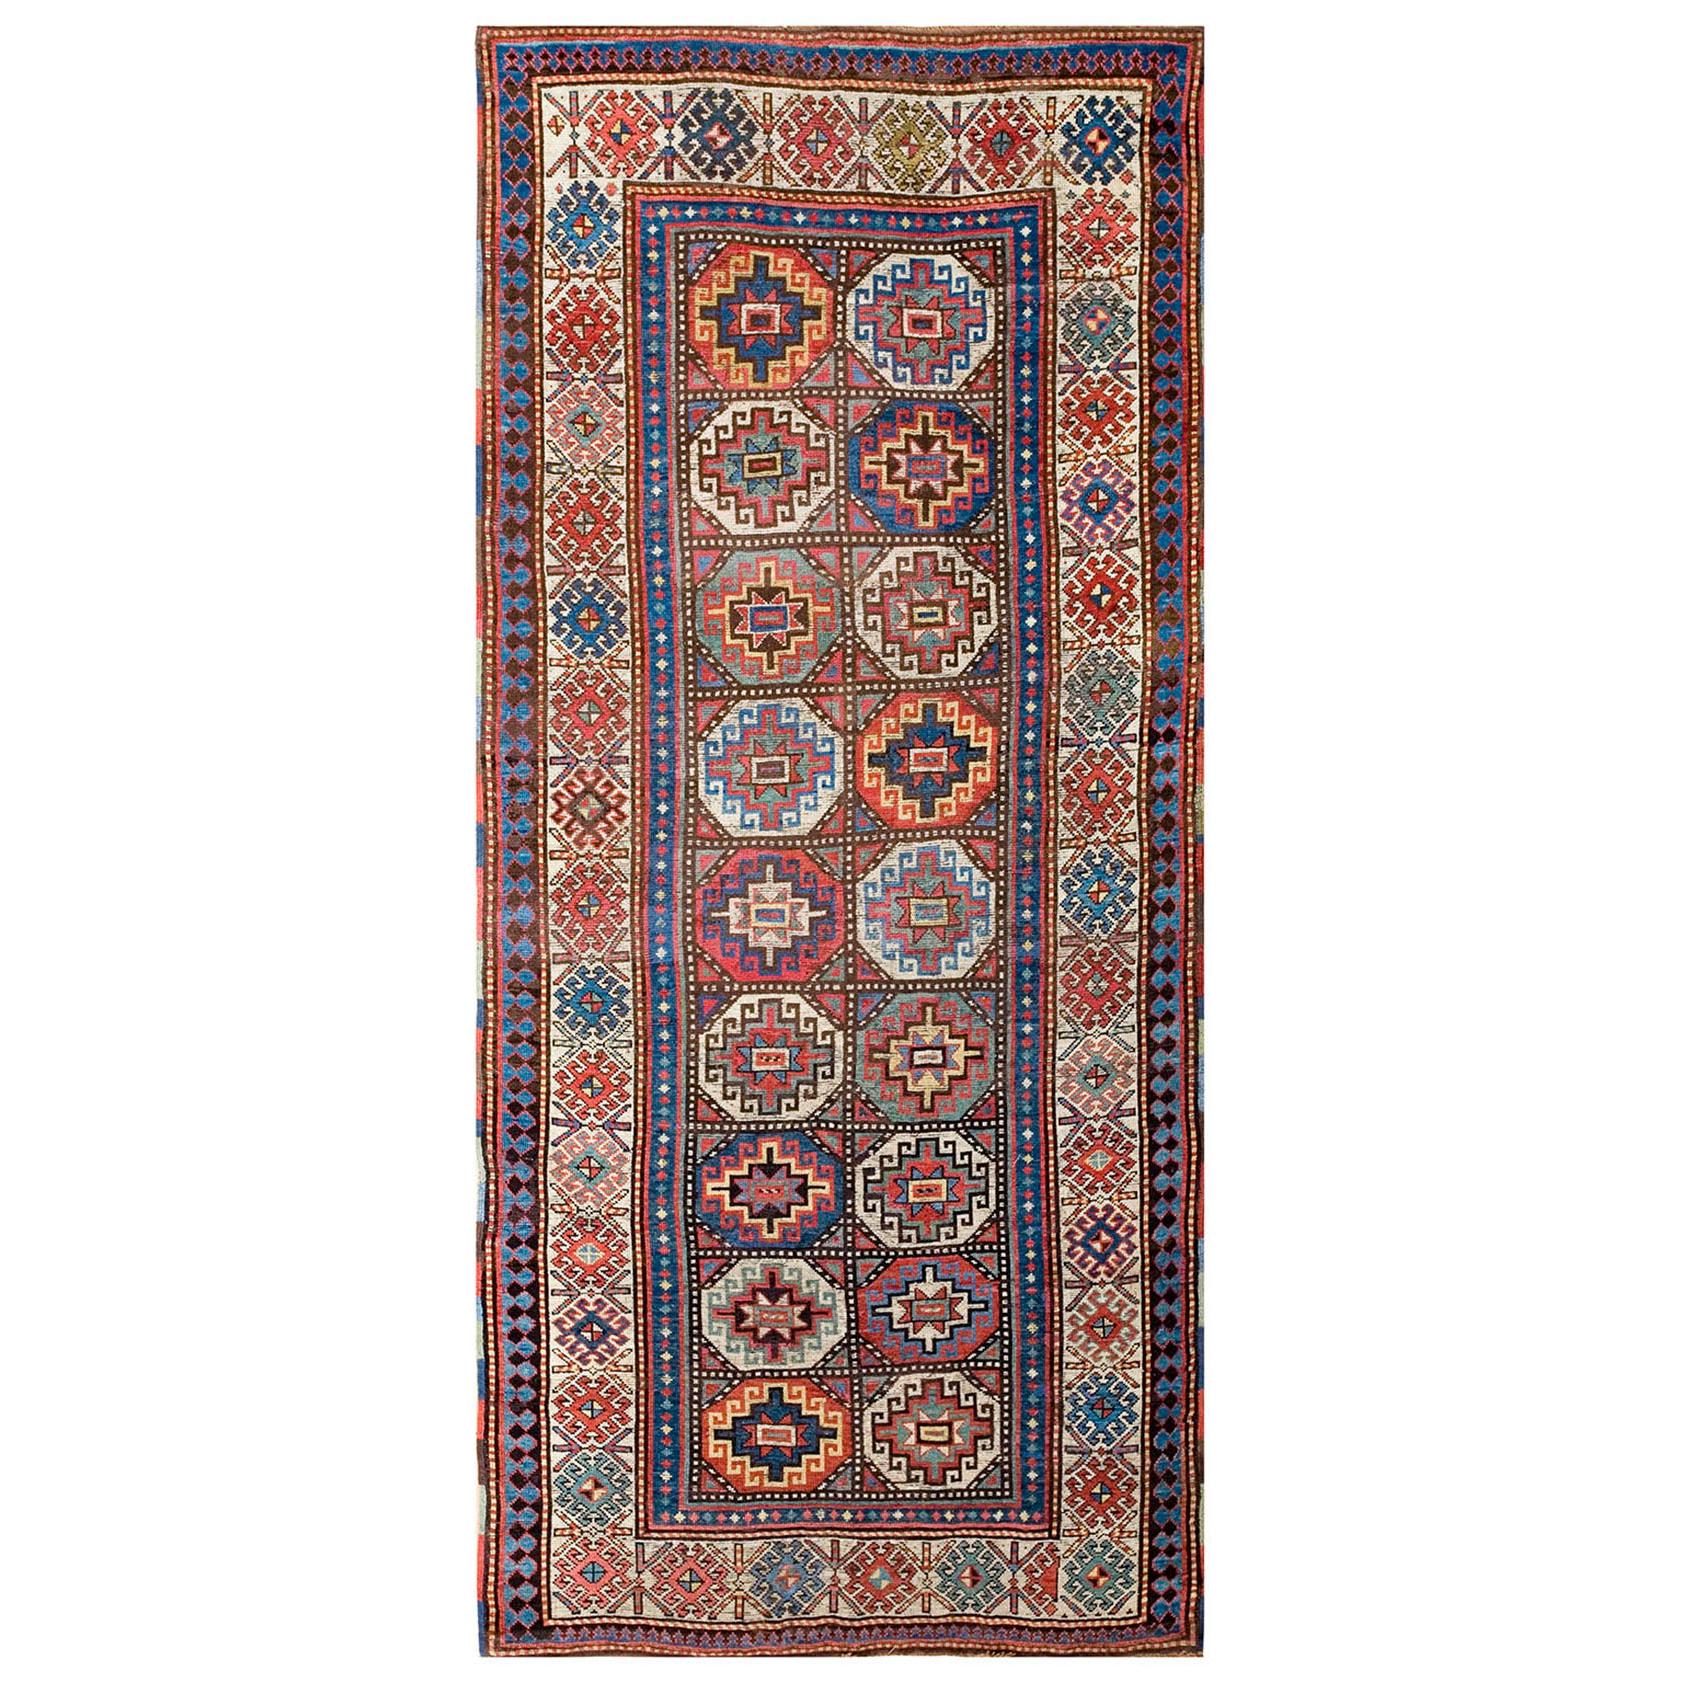 Kaukasischer Teppich des frühen 20. Jahrhunderts ( 4' x 9' - 122 x 274)